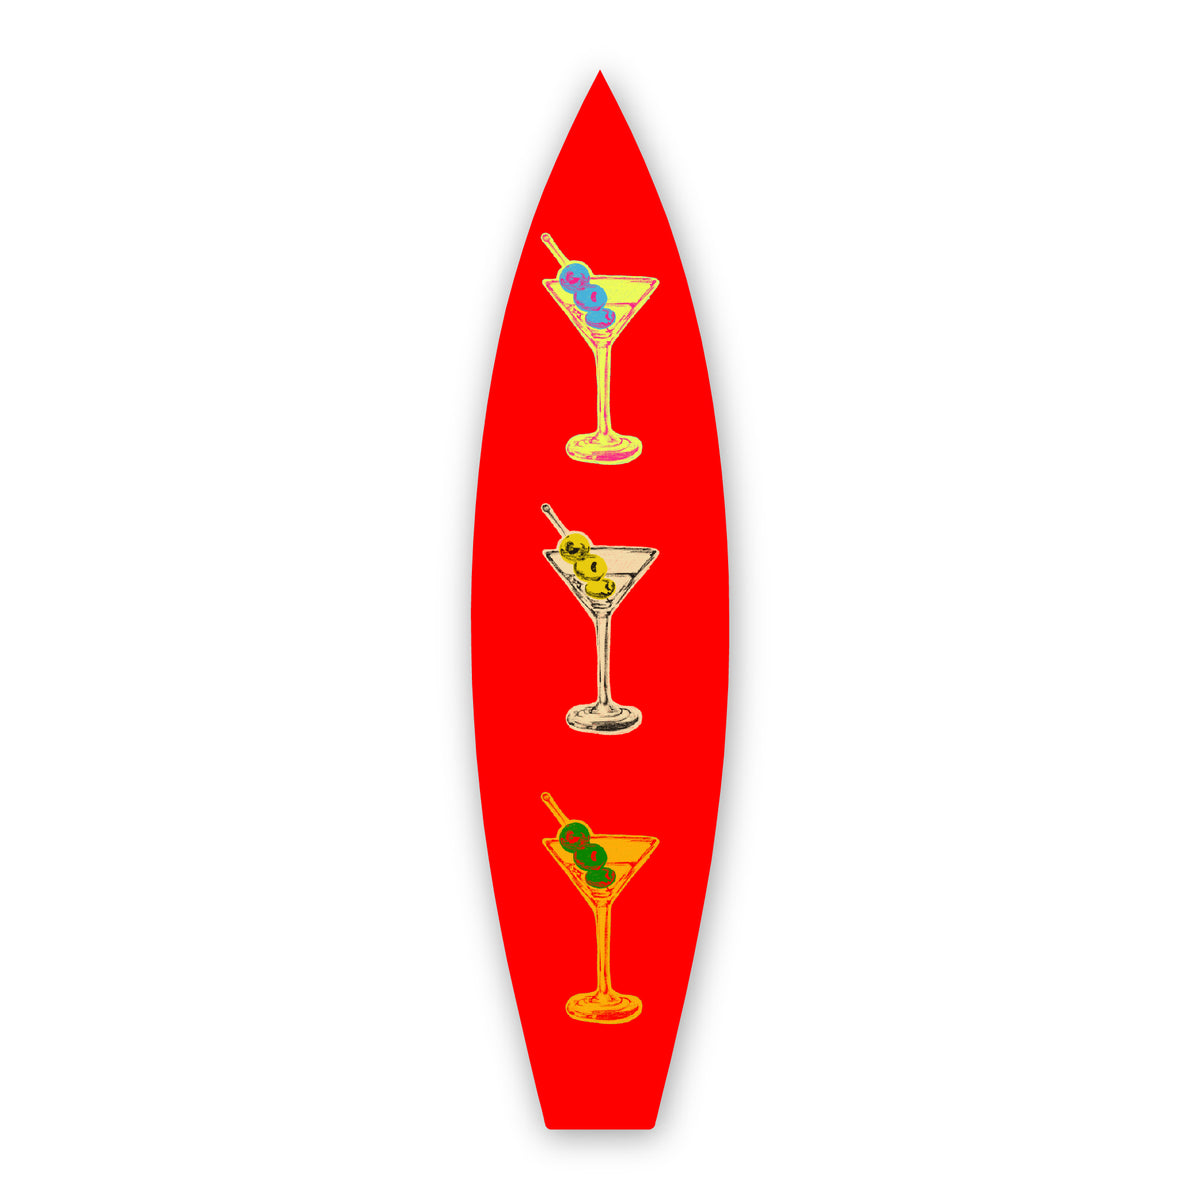 Retro Martini - Surfboard Art